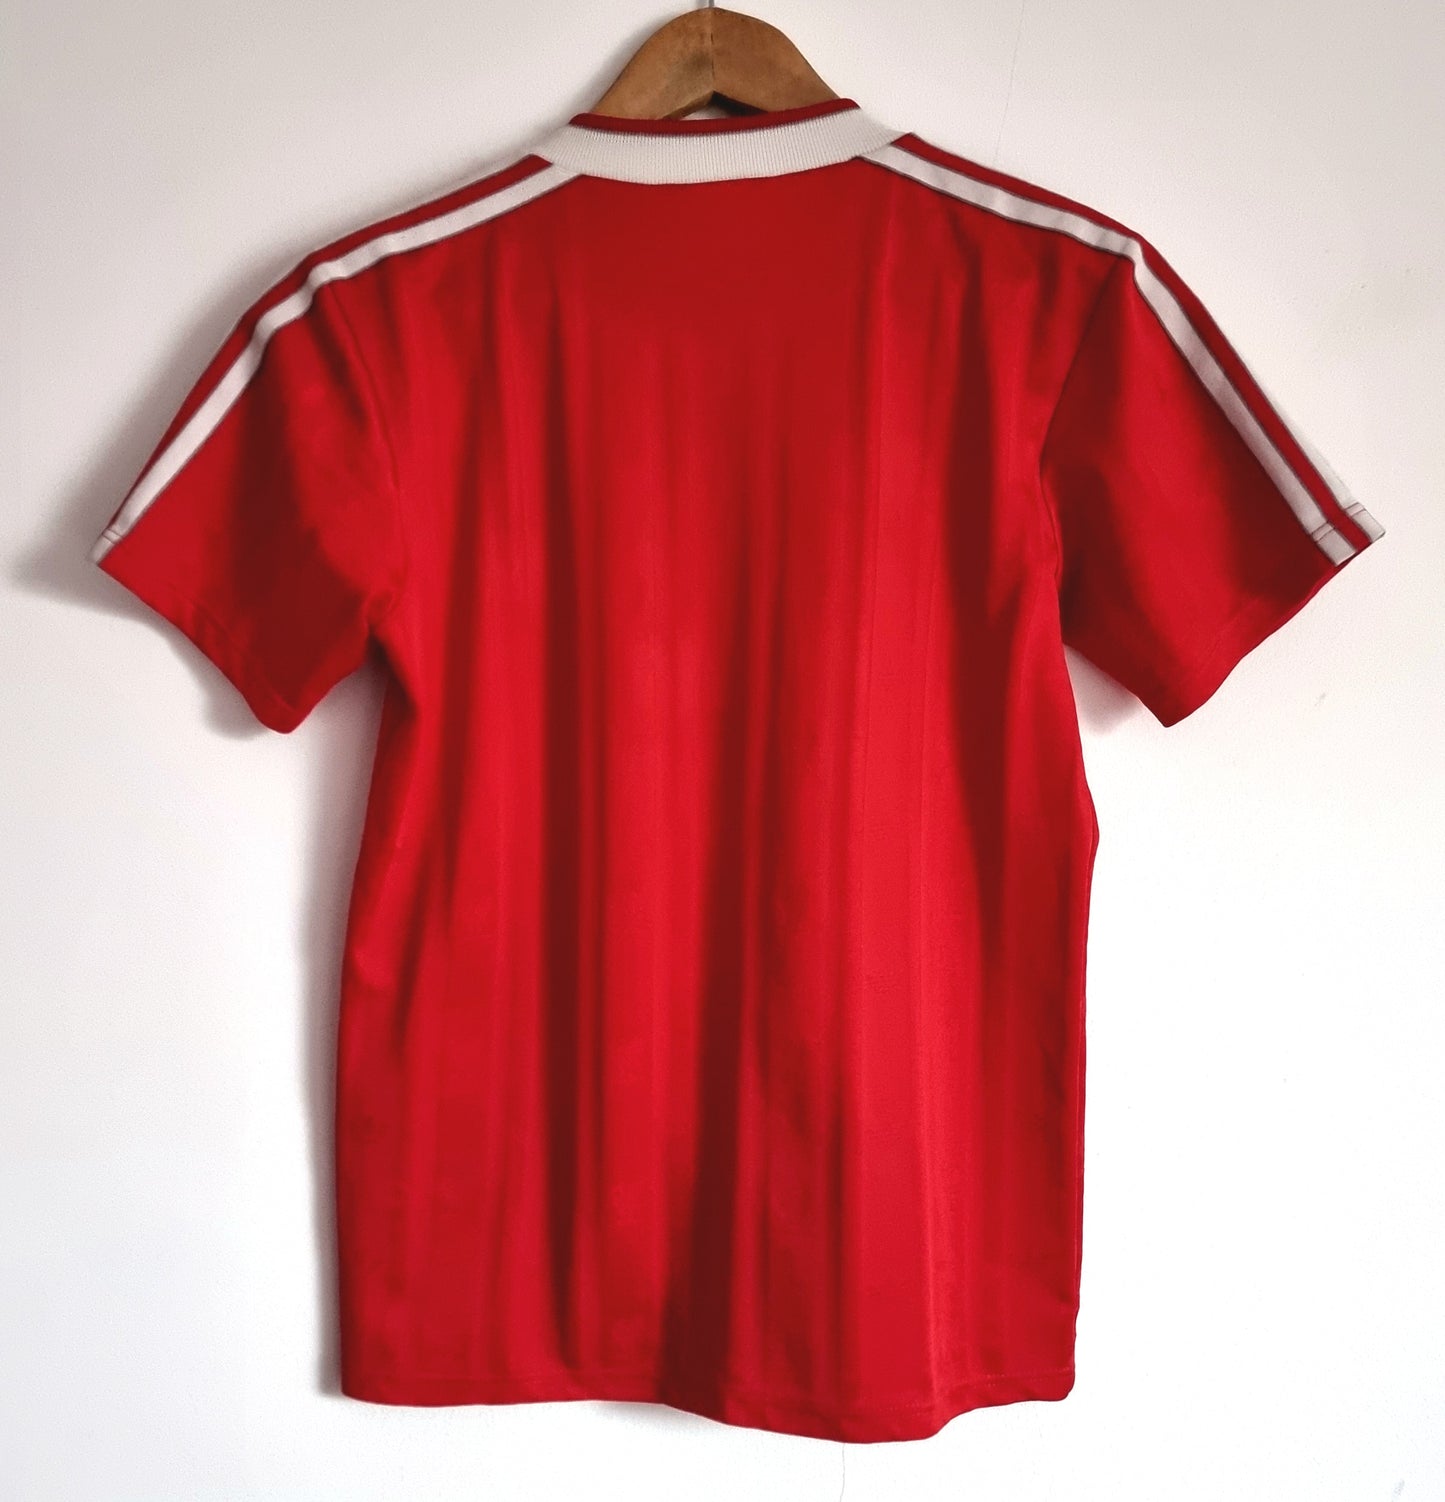 Adidas Liverpool 87/88 Home Shirt Small